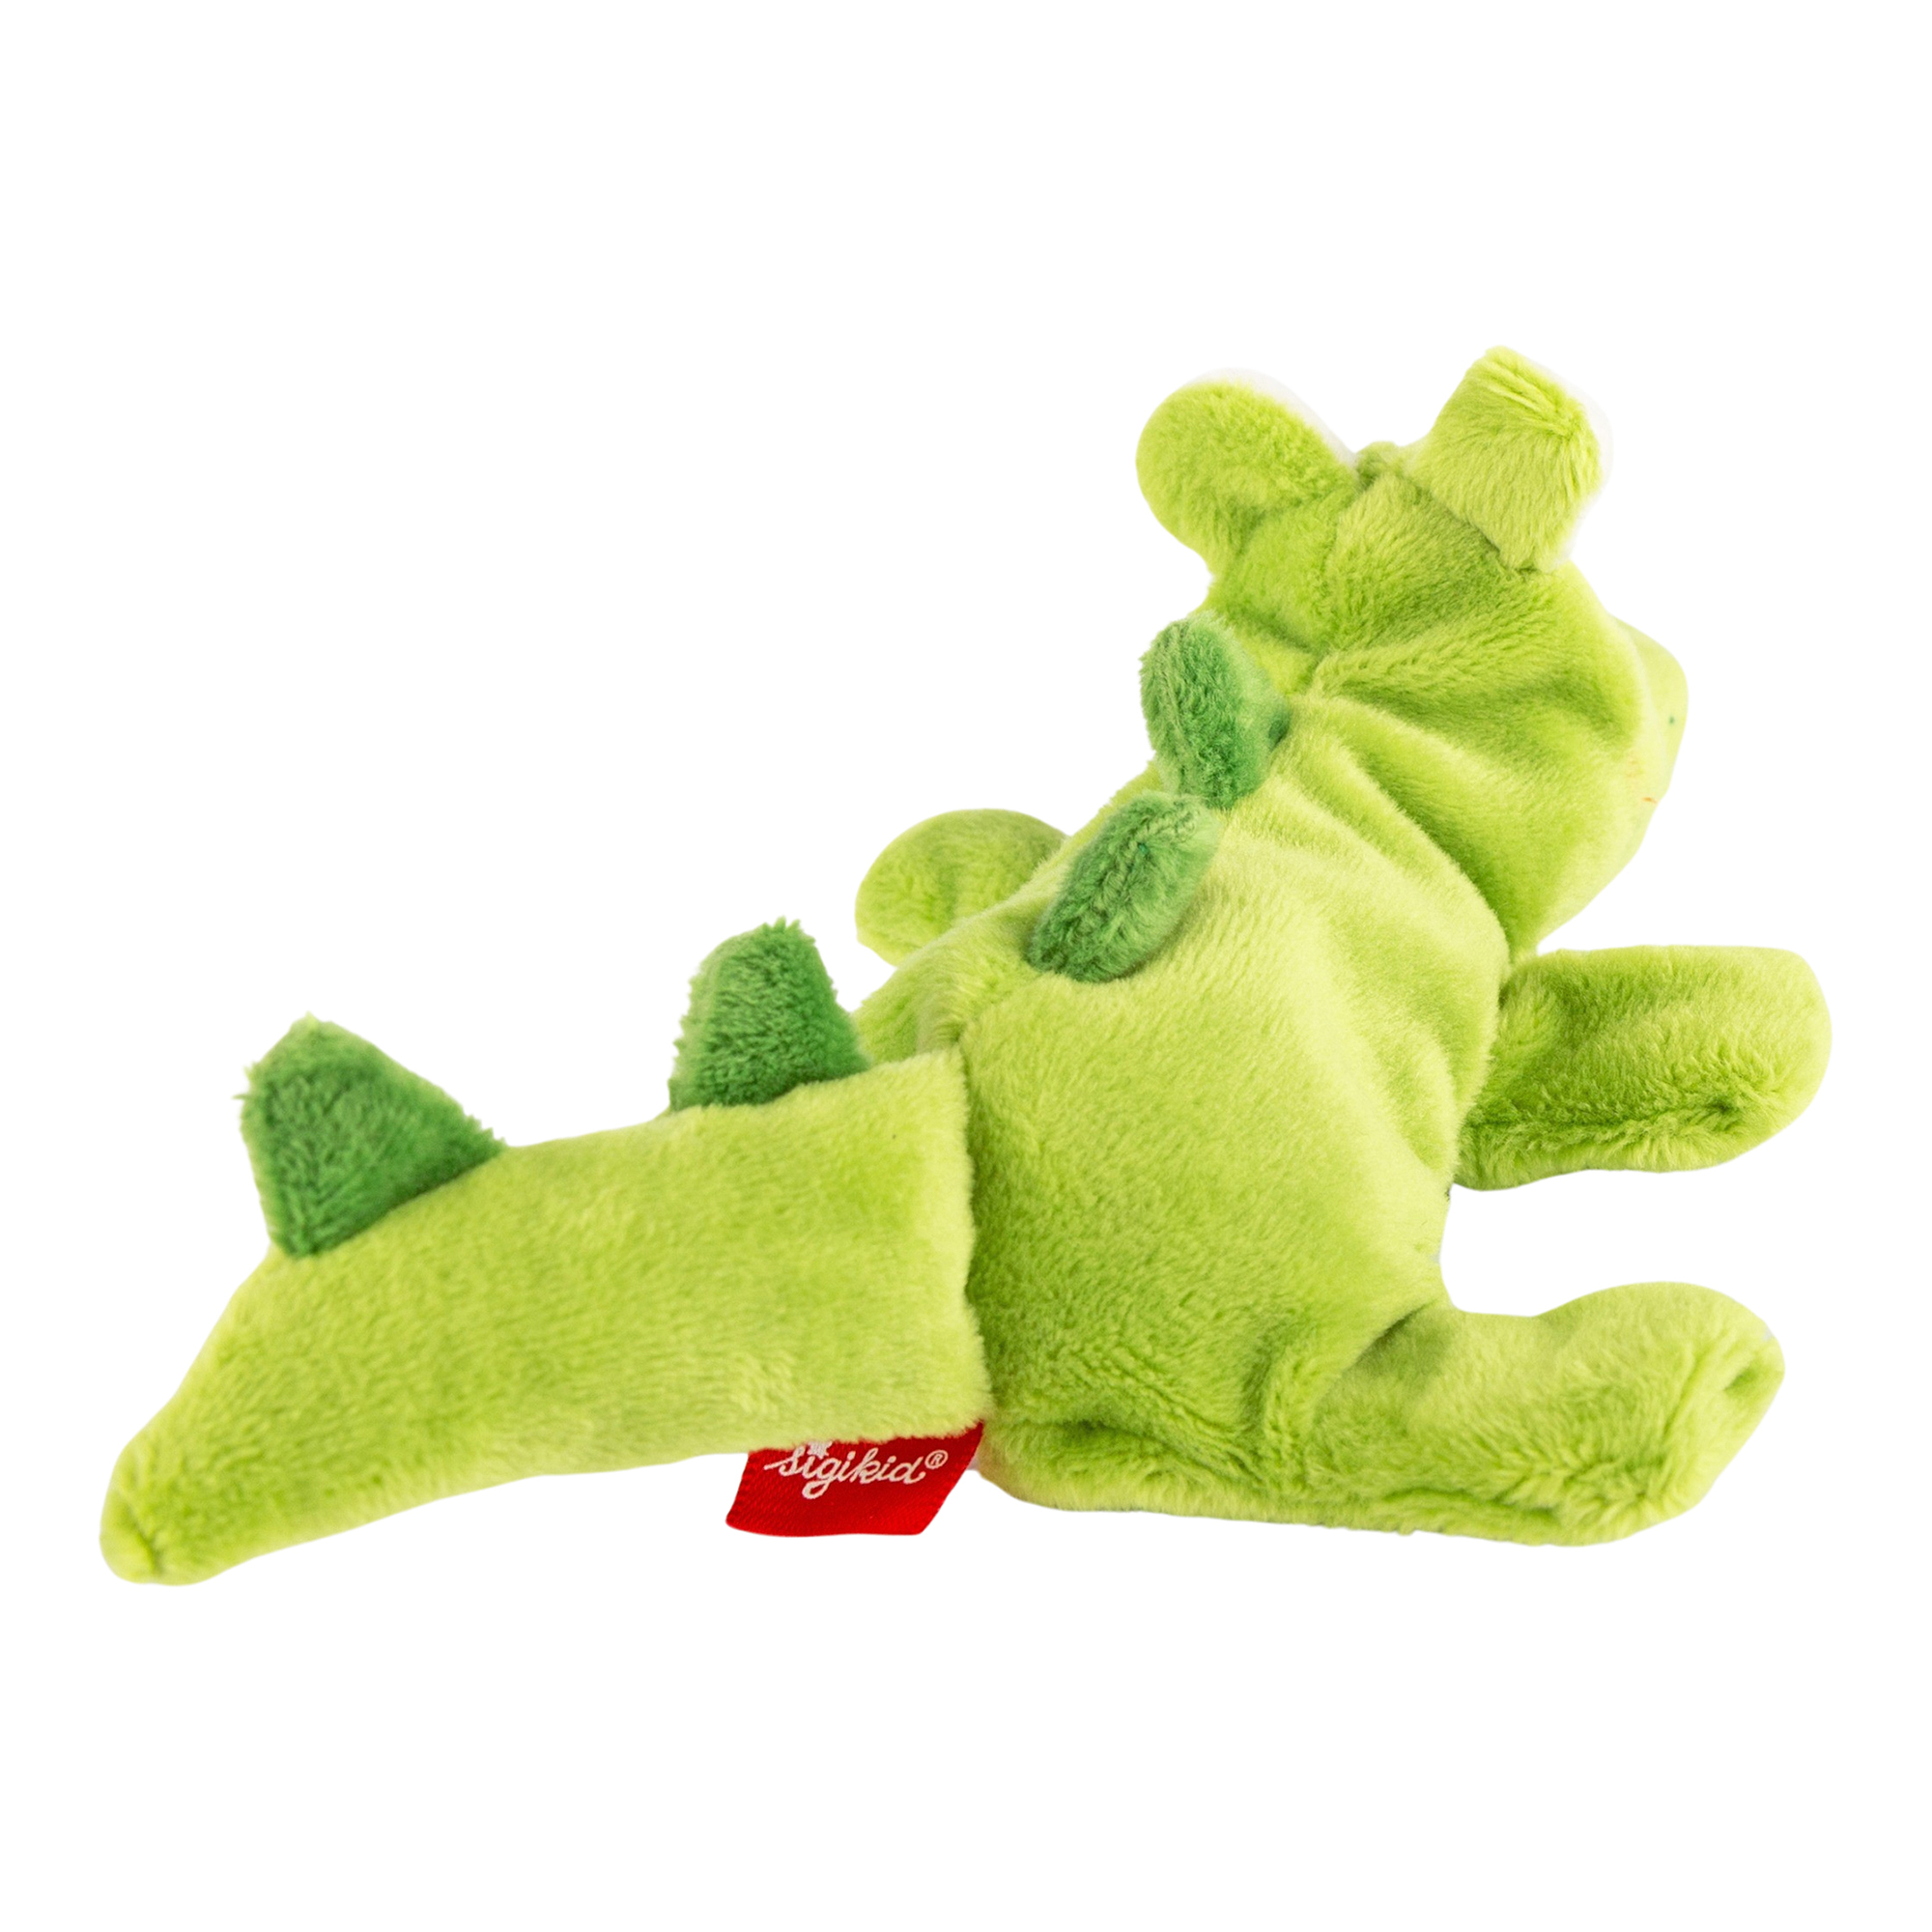 Mini plush crocodile, Sweety Cuddly Gadgets